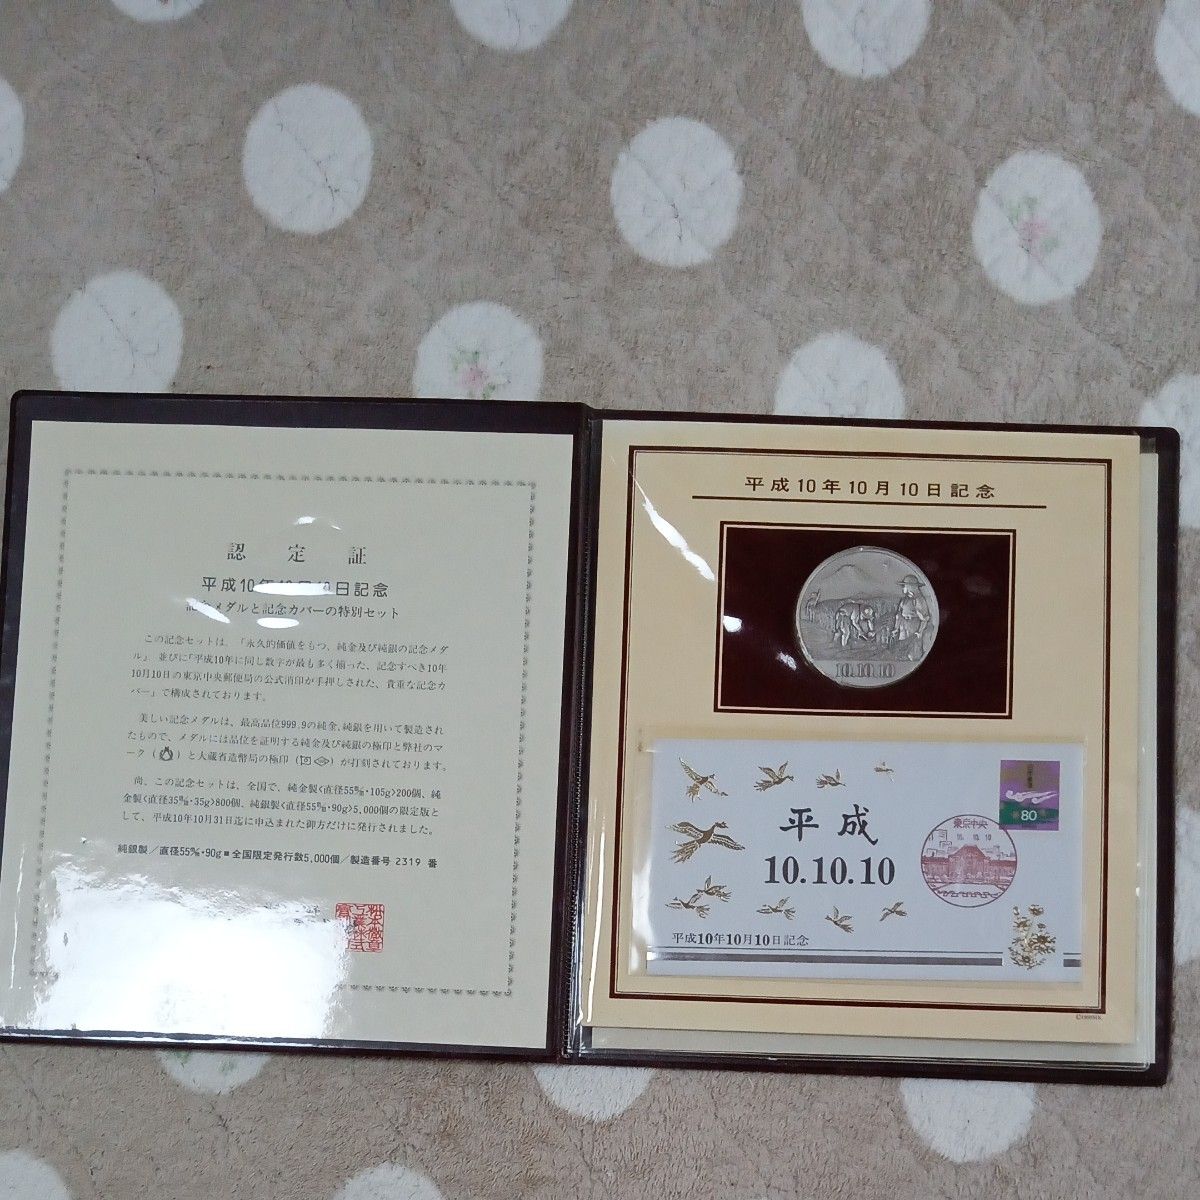 純銀　平成10年10月10日 記念メダル 記念カバー セット 極珍品　最高品位999.9%純銀90g大蔵省造幣局の極印打刻有り